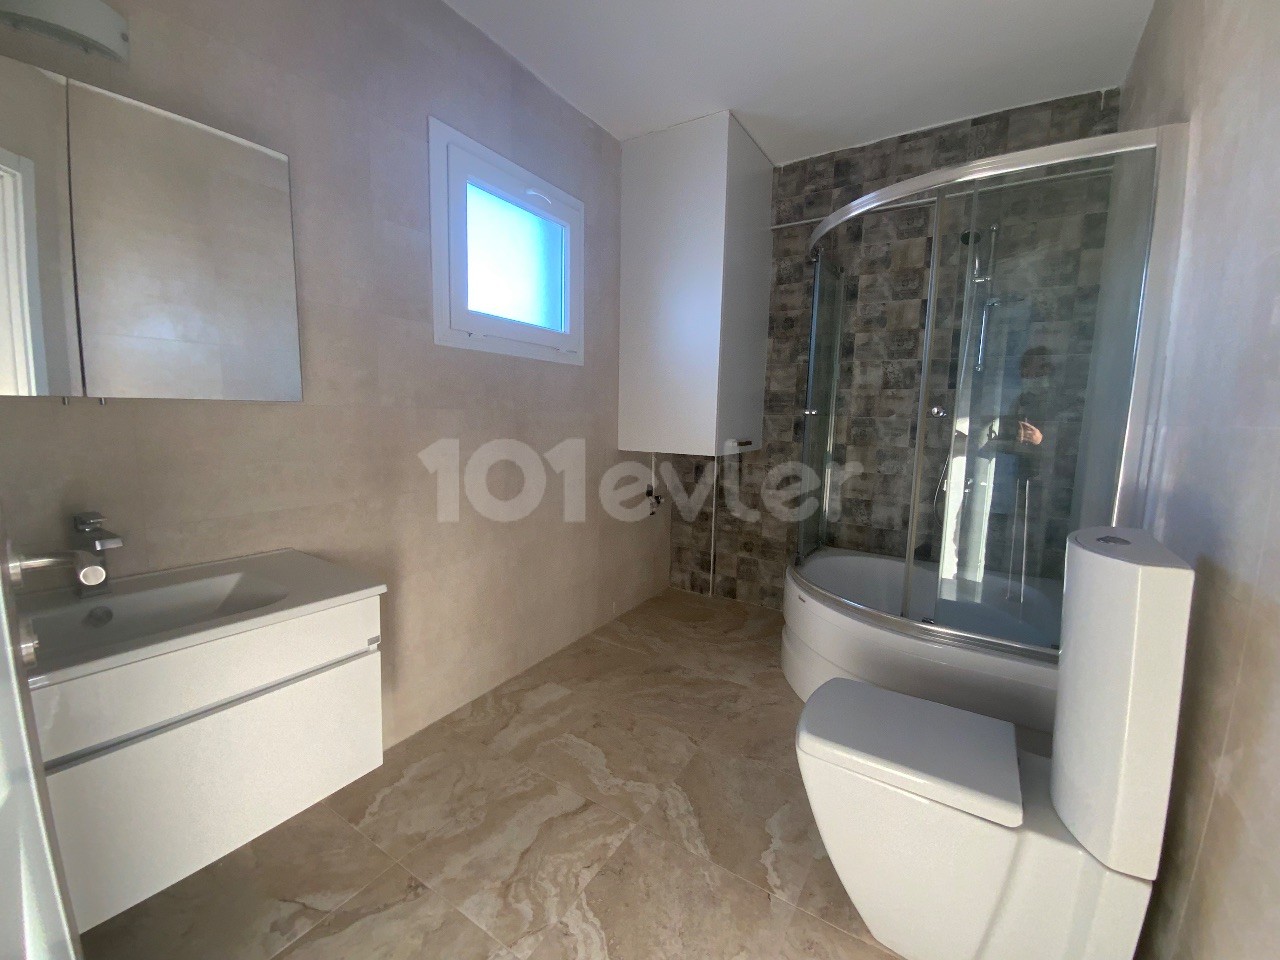 2+1 Wohnung mit Pool mit Meer-und Bergblick zum Verkauf in Kyrenia Zentrum von Zypern ** 